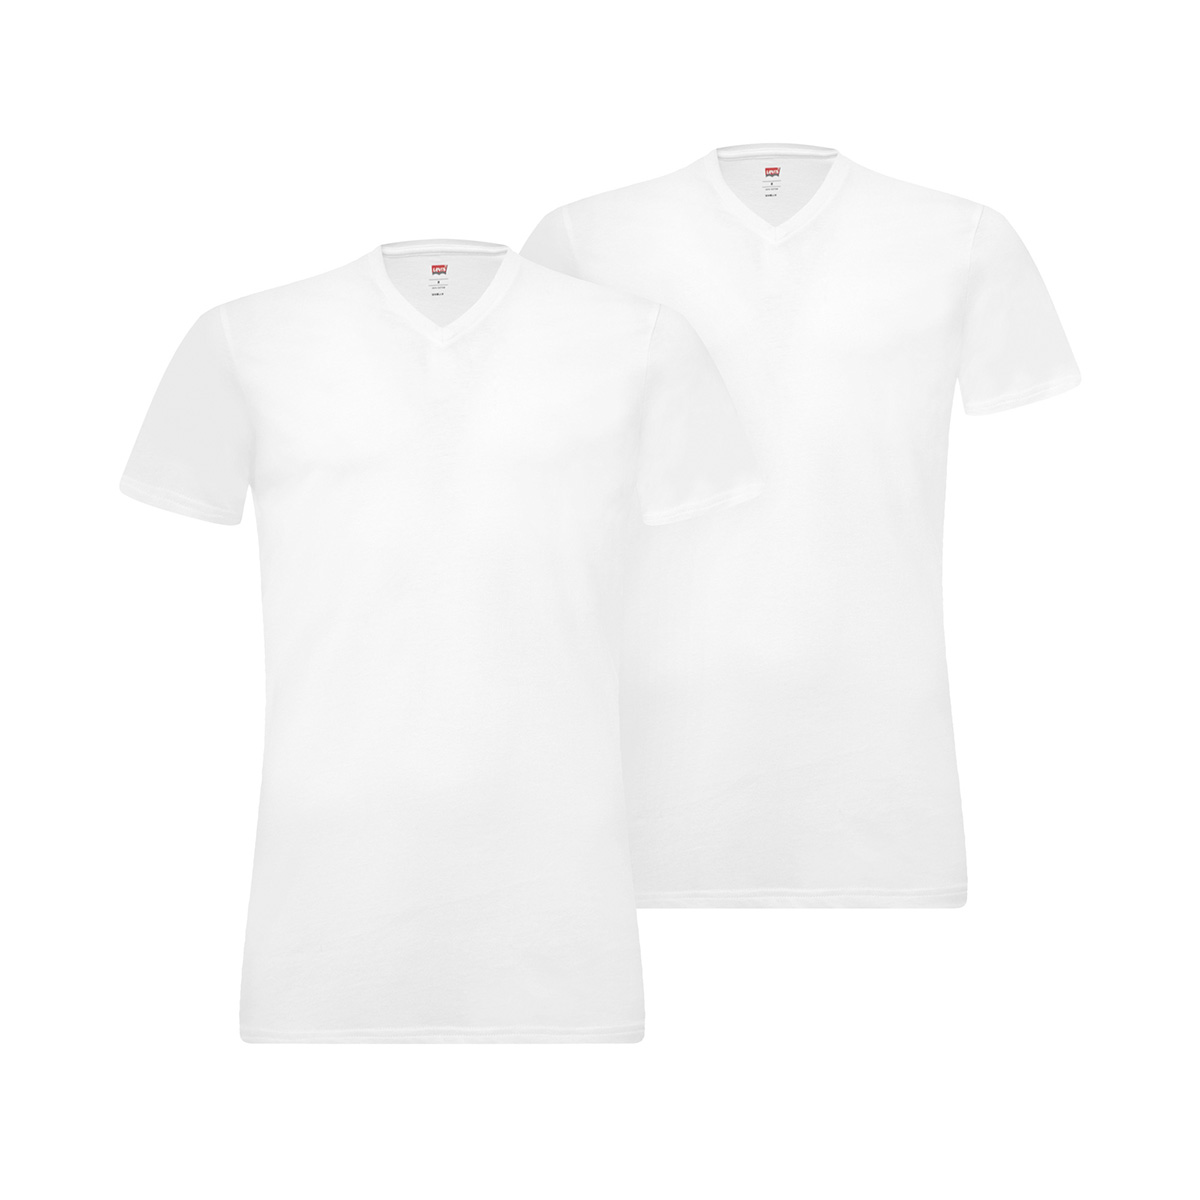 2 er Pack Levis 200SF V-Neck T-Shirt Men Herren Unterhemd V-Ausschnitt